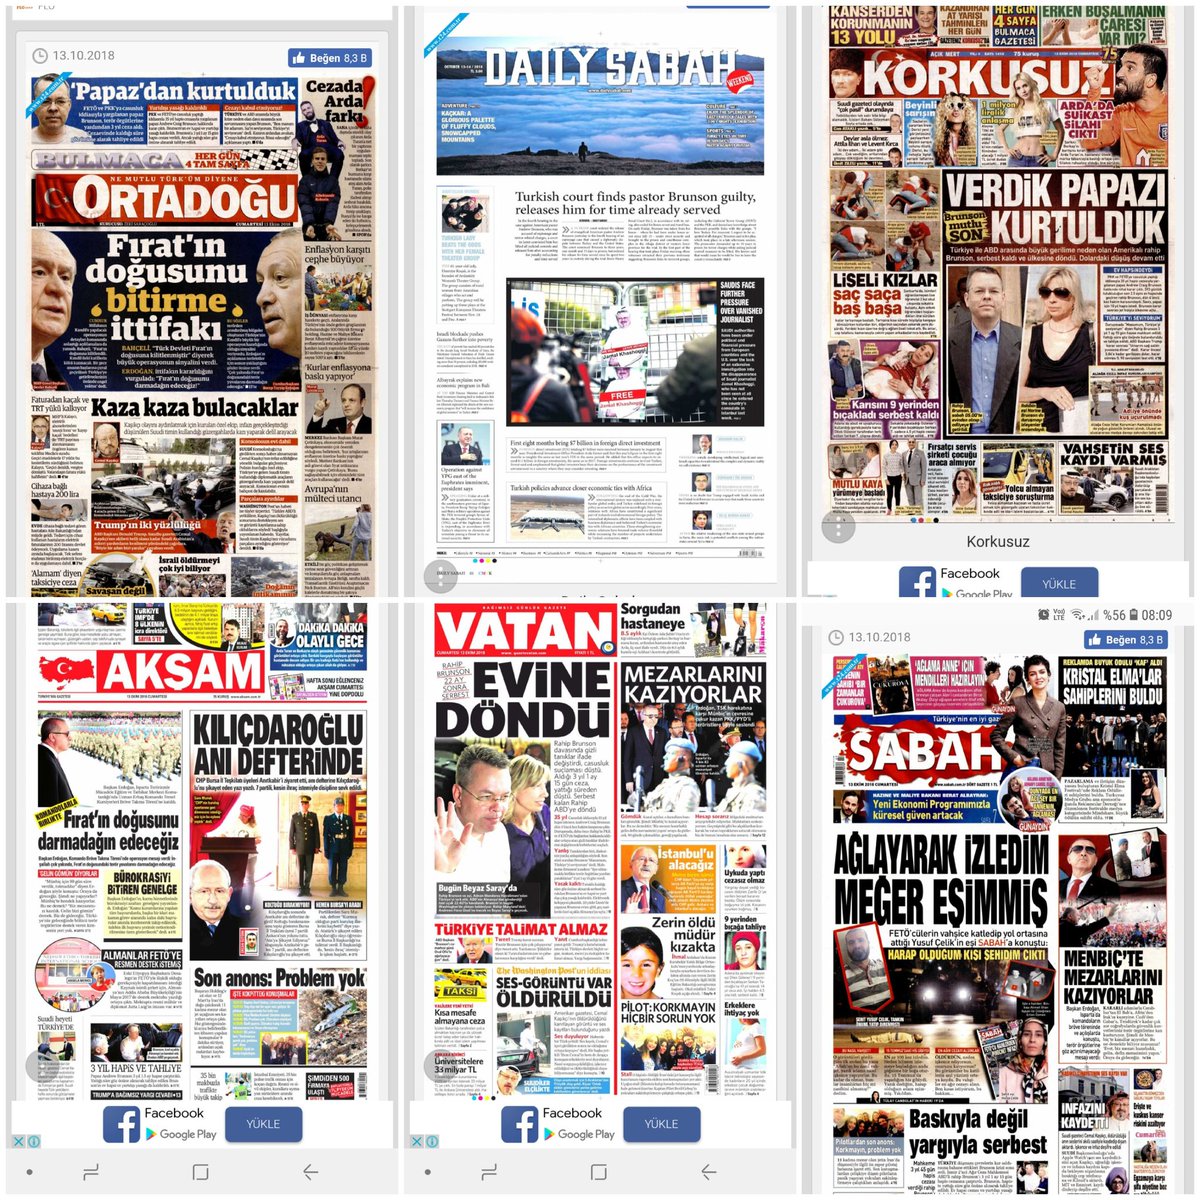 Yandaş medya manşetleri tahmin yarışması